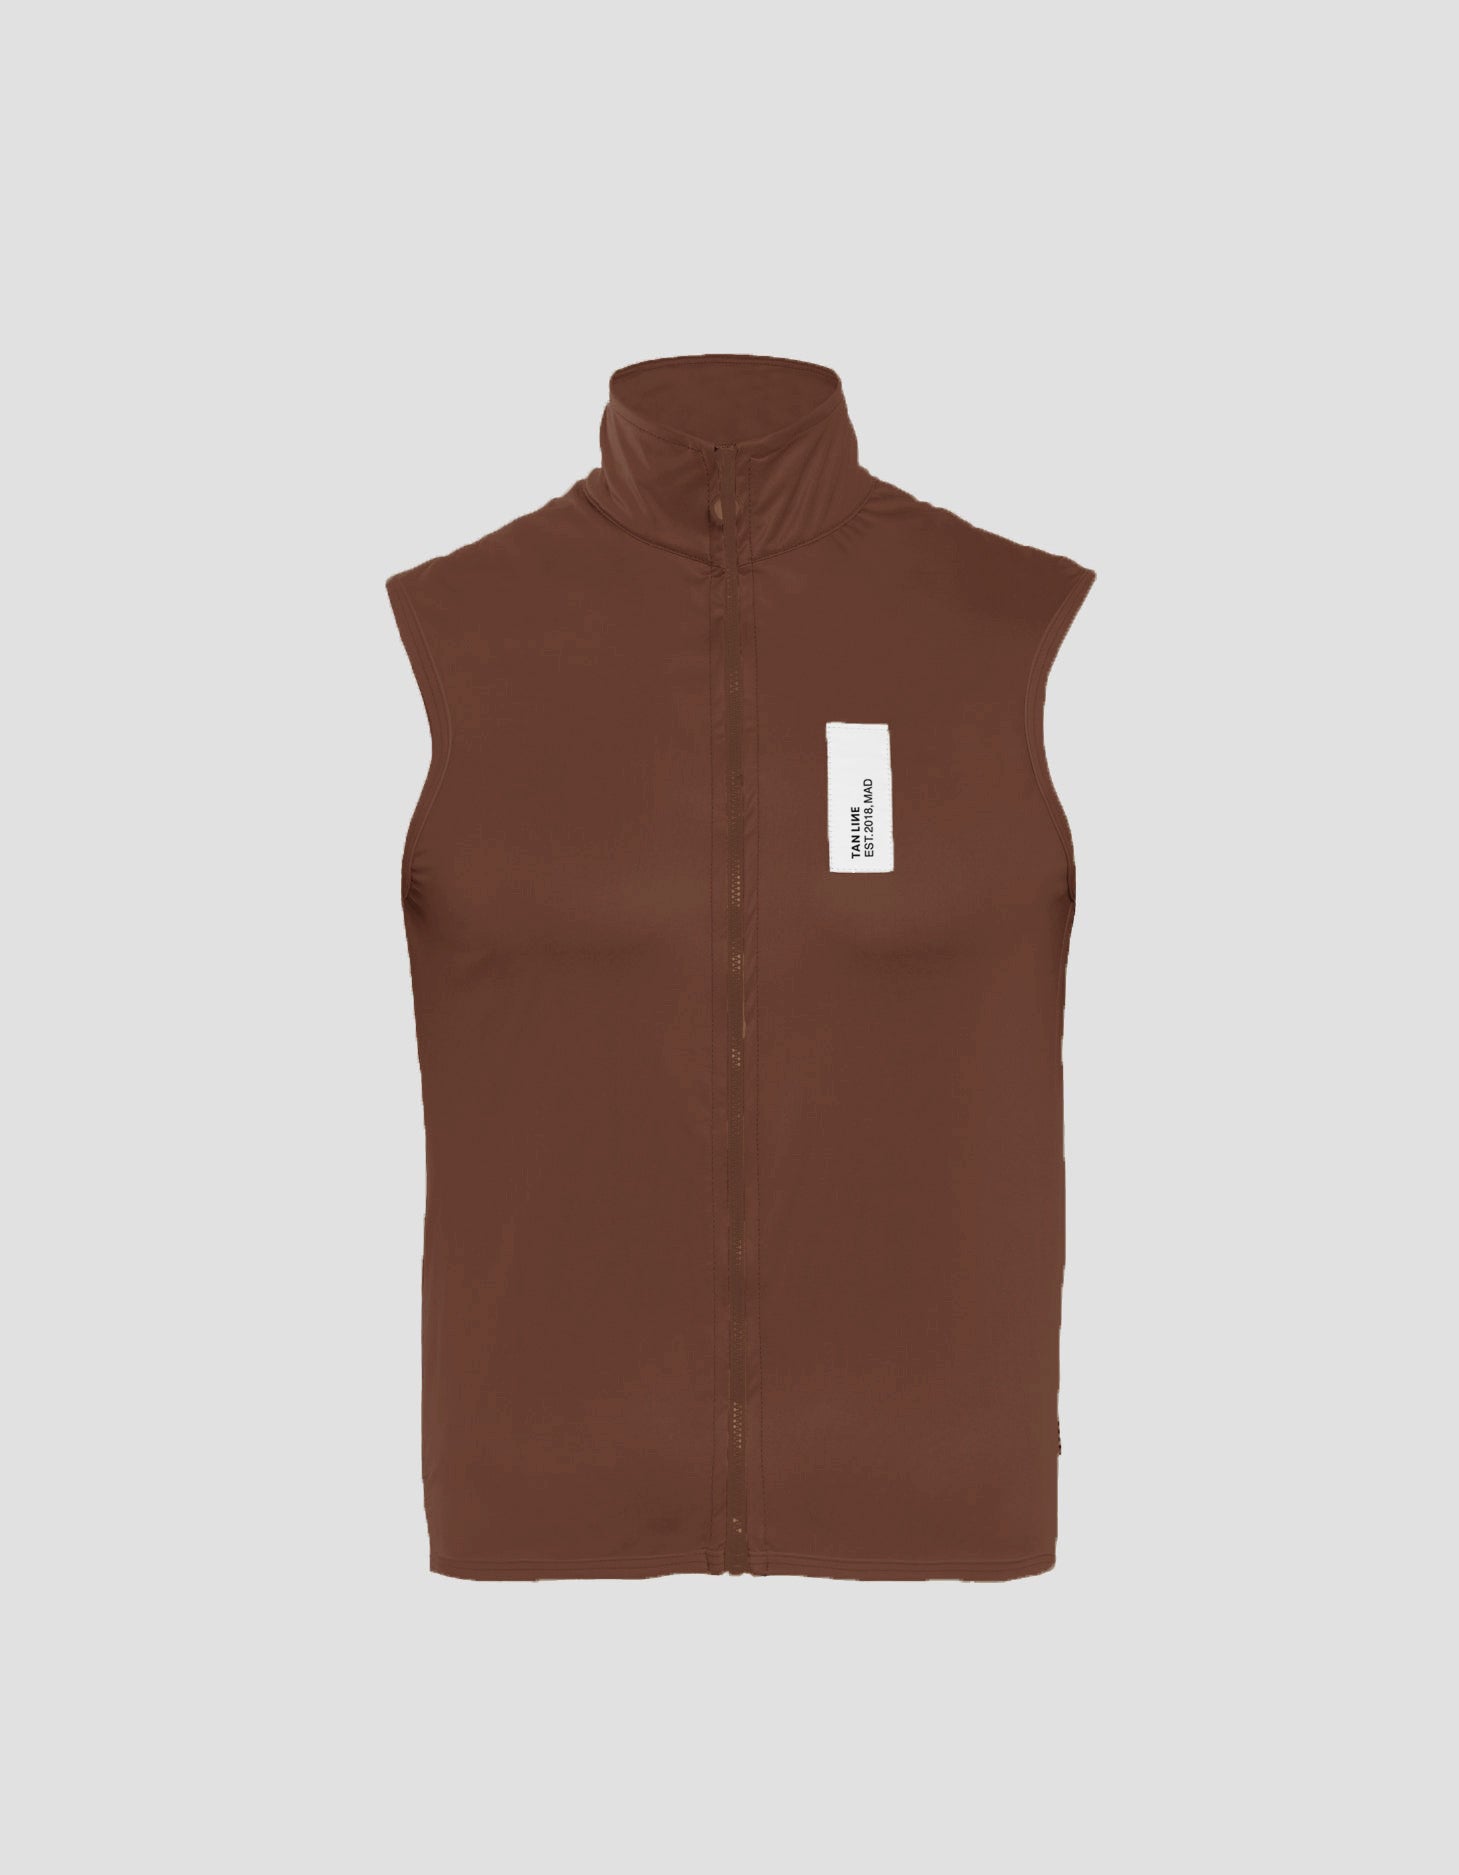 Pass vest ~ Pecan brown 